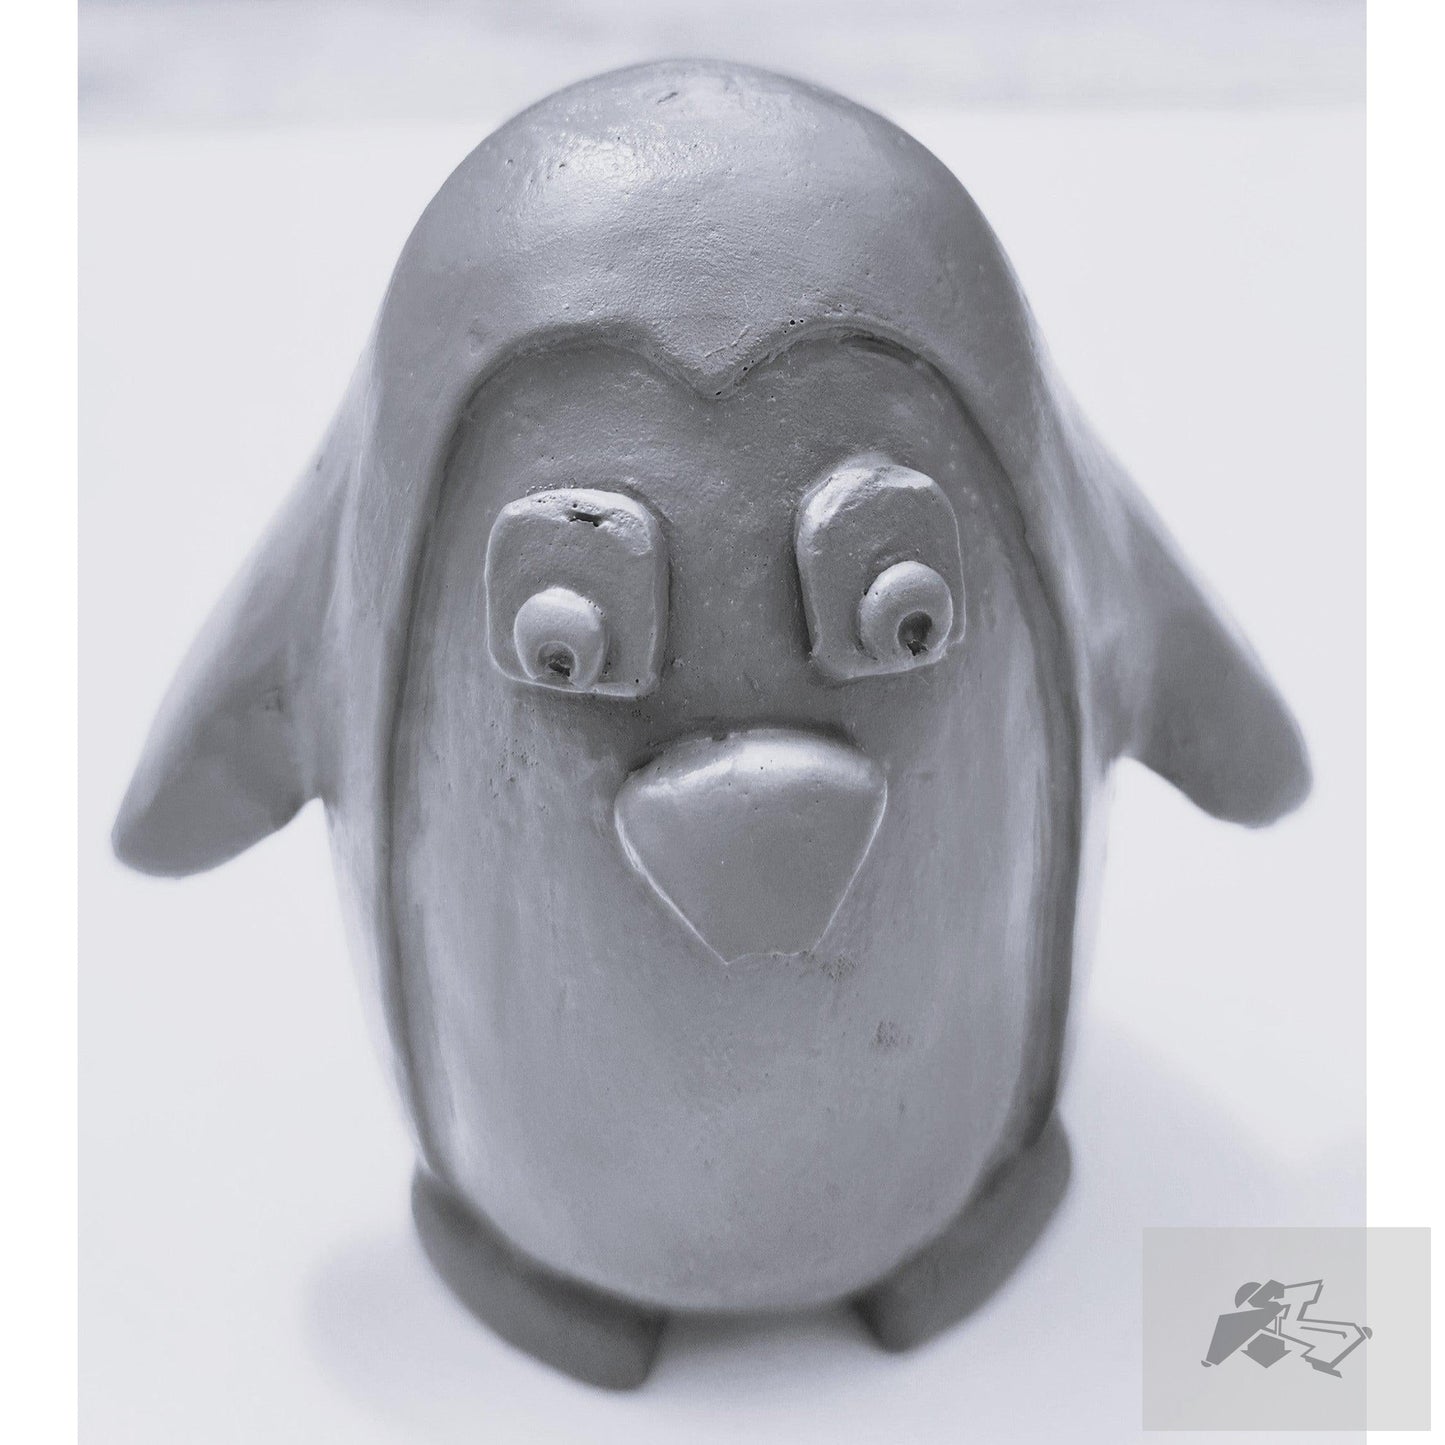 Small penguin robot model - Aribotz-Silence Melbourne